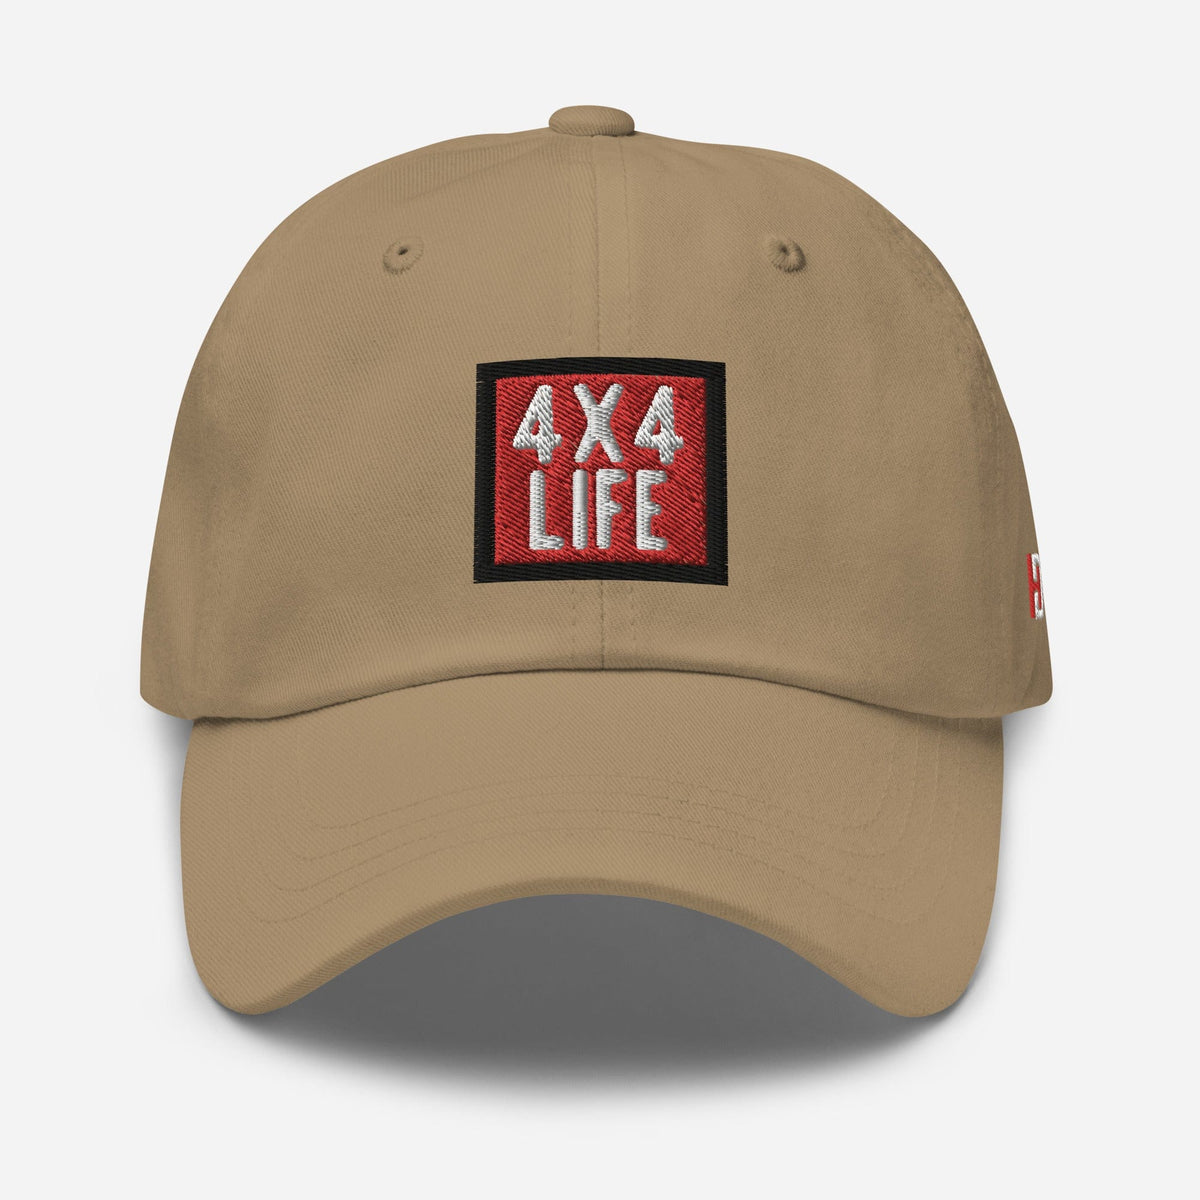 4x4 Life Dad Hat Khaki